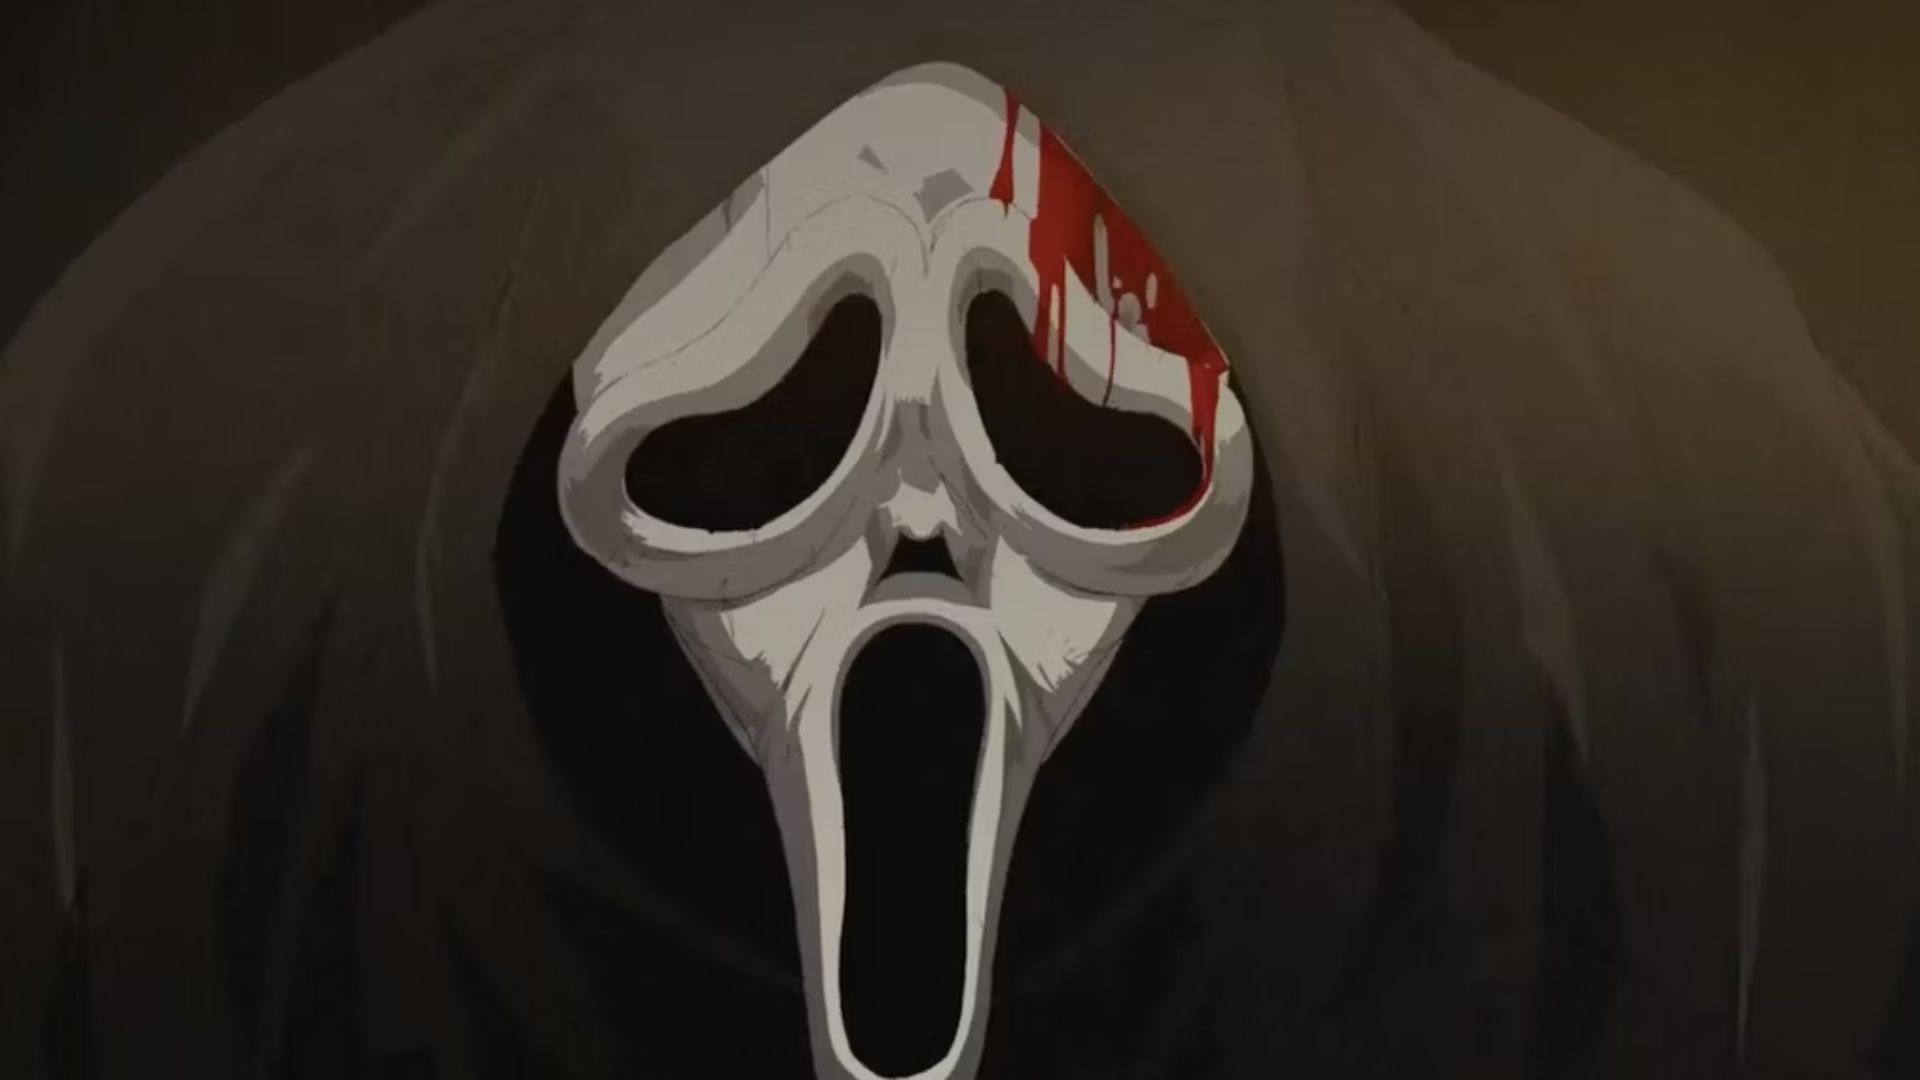 cortometraje-scream-6-en-formato-anime-promocional-secuela-animado-rostro-ghostface